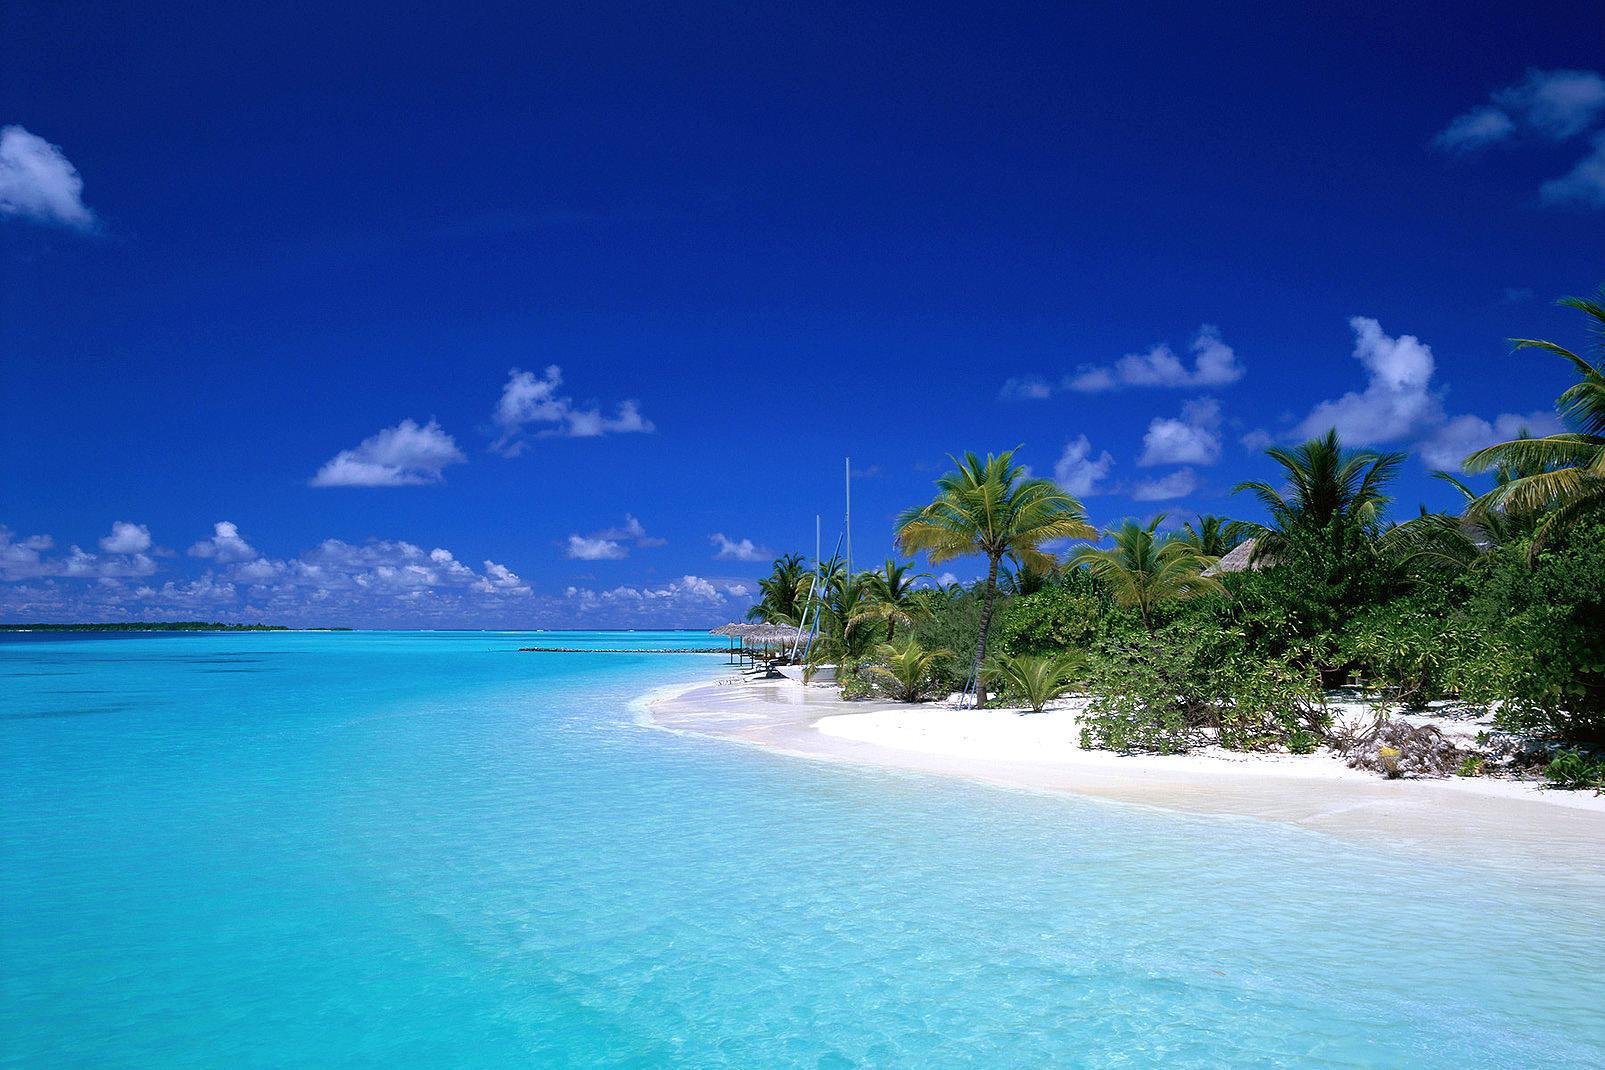 Ari Nord est un des archipels les plus touristiques des Maldives. L'archipel est constitué de nombreuses îles dont le beau et original Dhoni Migili, qui vous loge dans un bungalow et un bateau très confortables... L'archipel compte également l'île fine et longue Kuramathi, la seule île des Maldives à posséder 3 hôtels.
Nous vous invitons au rêve en lisant nos fiches, et peut-être qui sait... à la ...